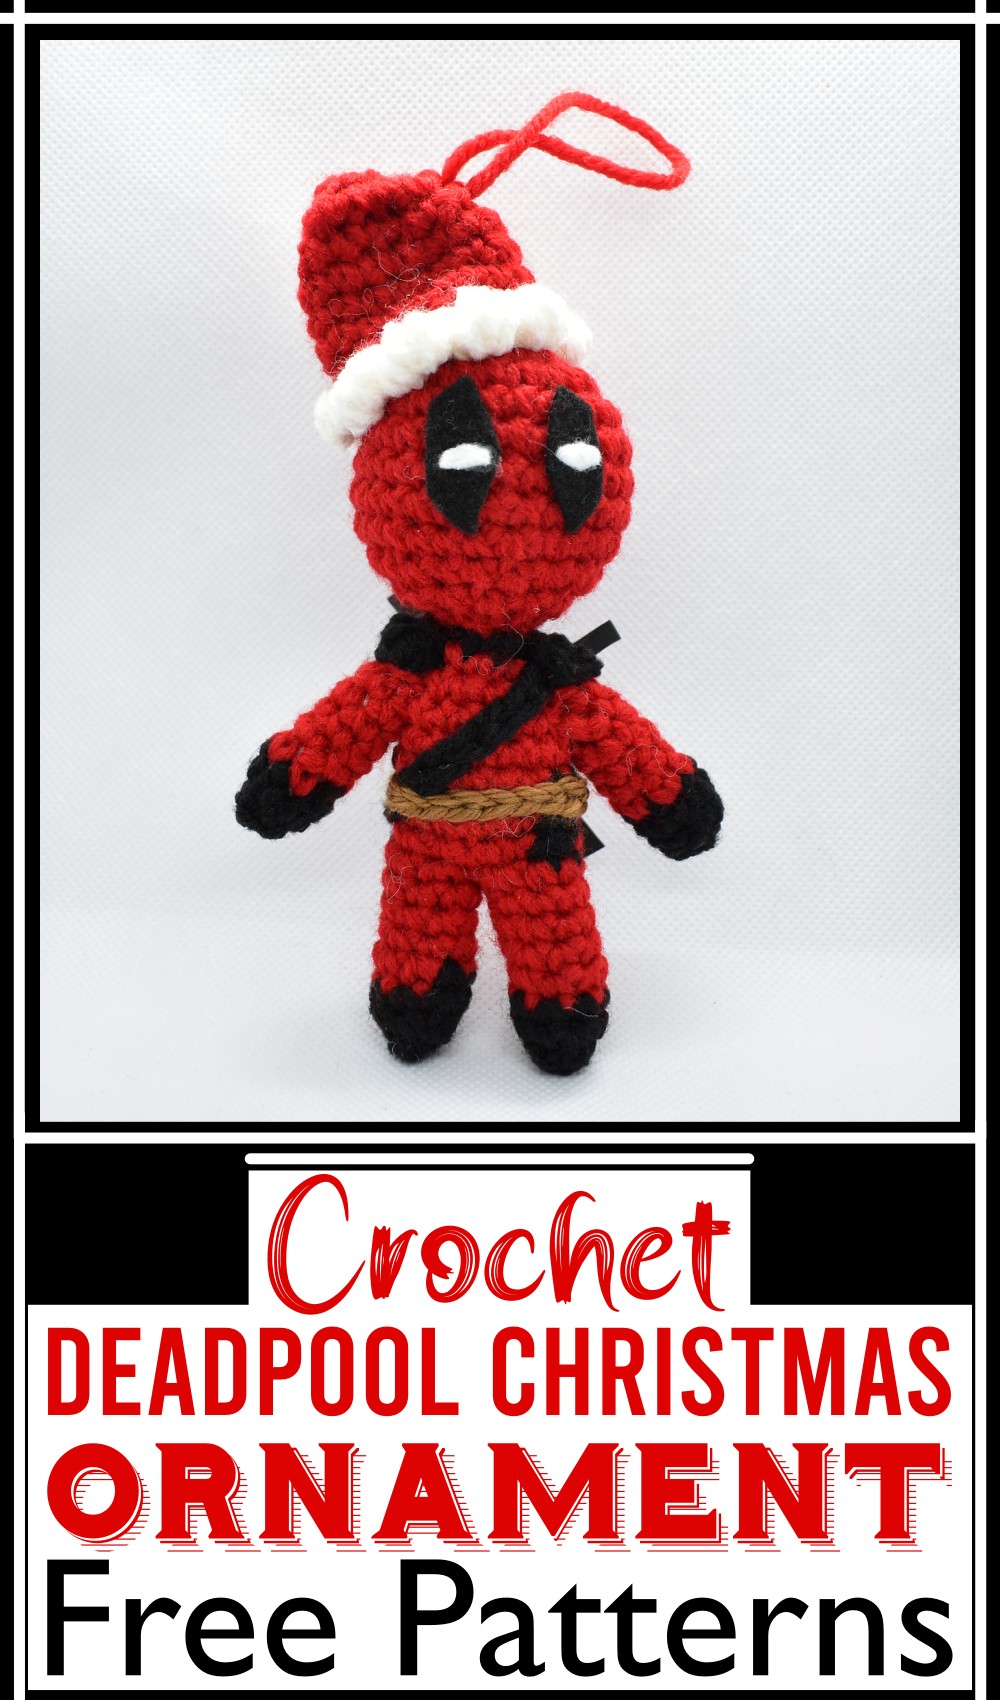 Deadpool Christmas Ornament